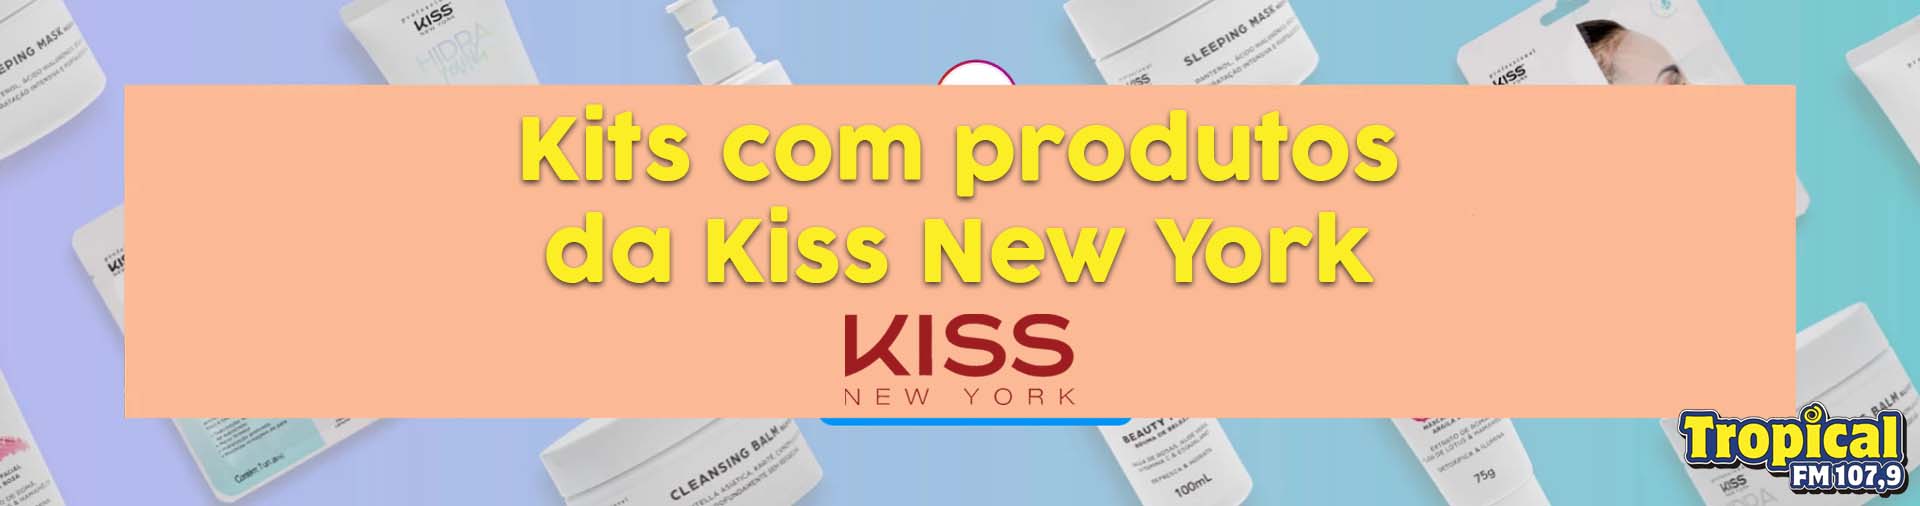 Banner Kit Kiss New York